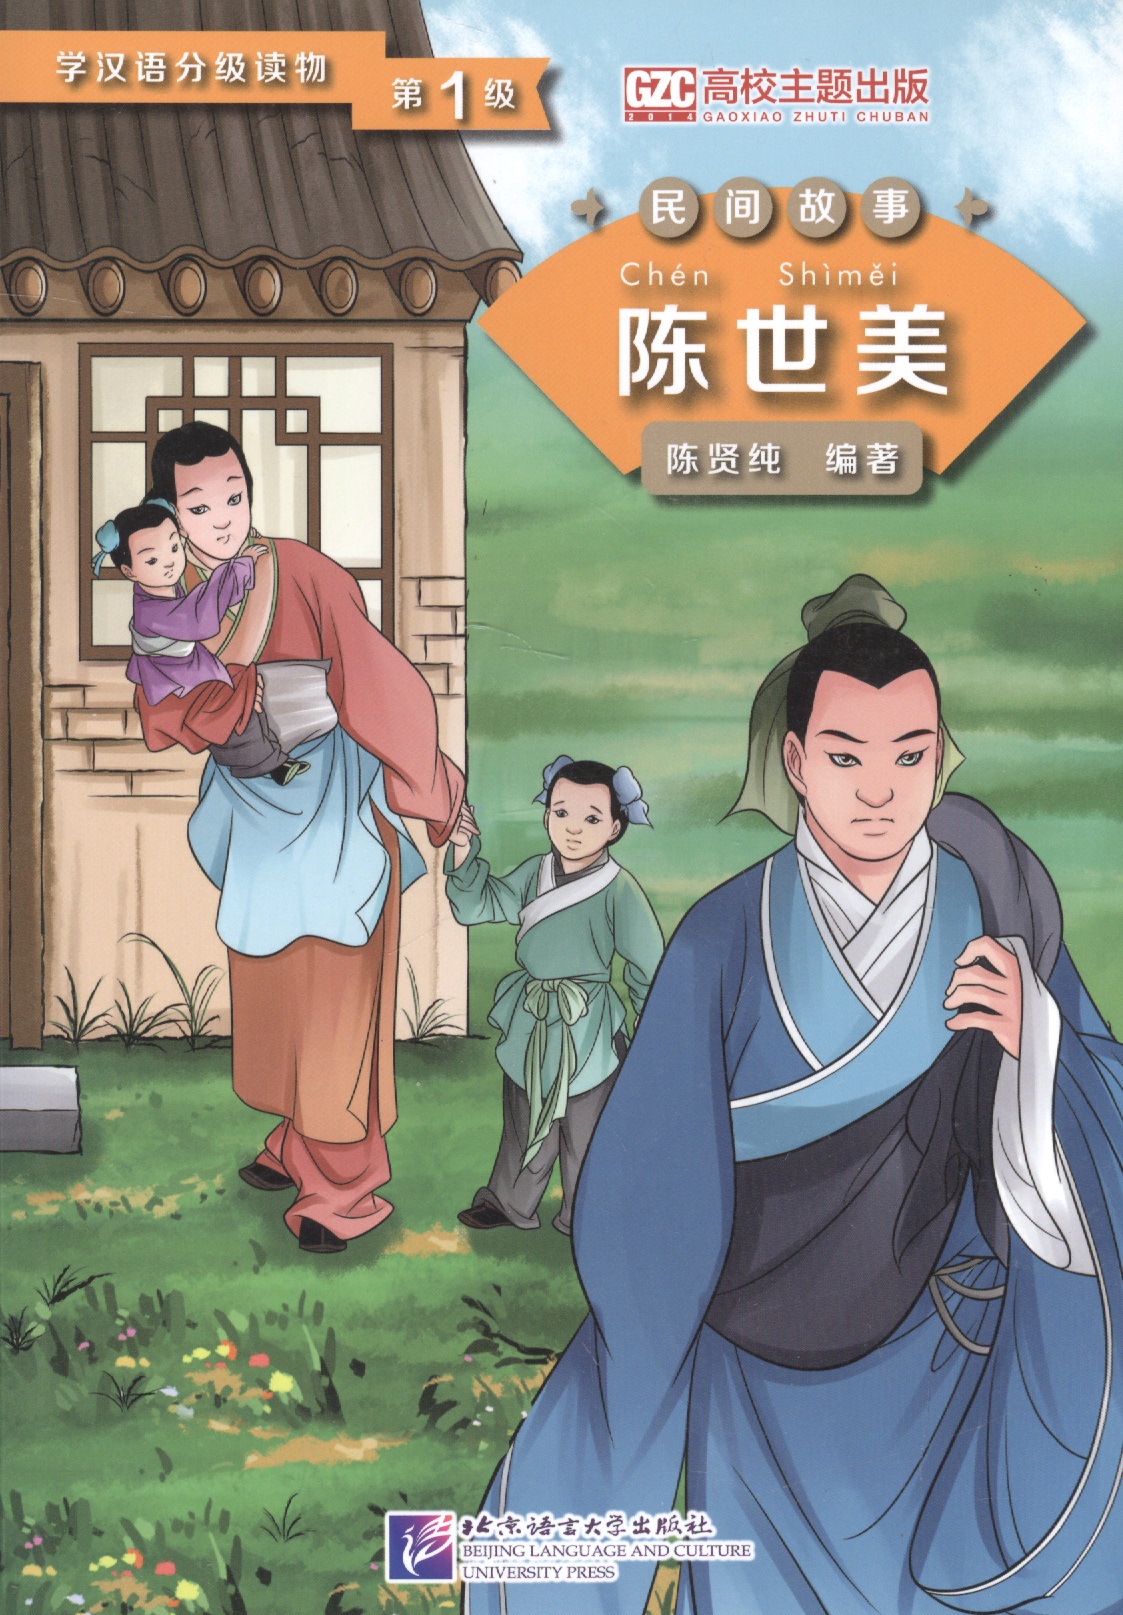 Graded Readers for Chinese Language Learners (Folktales): Chen Shimei. Адаптированная книга для чтения